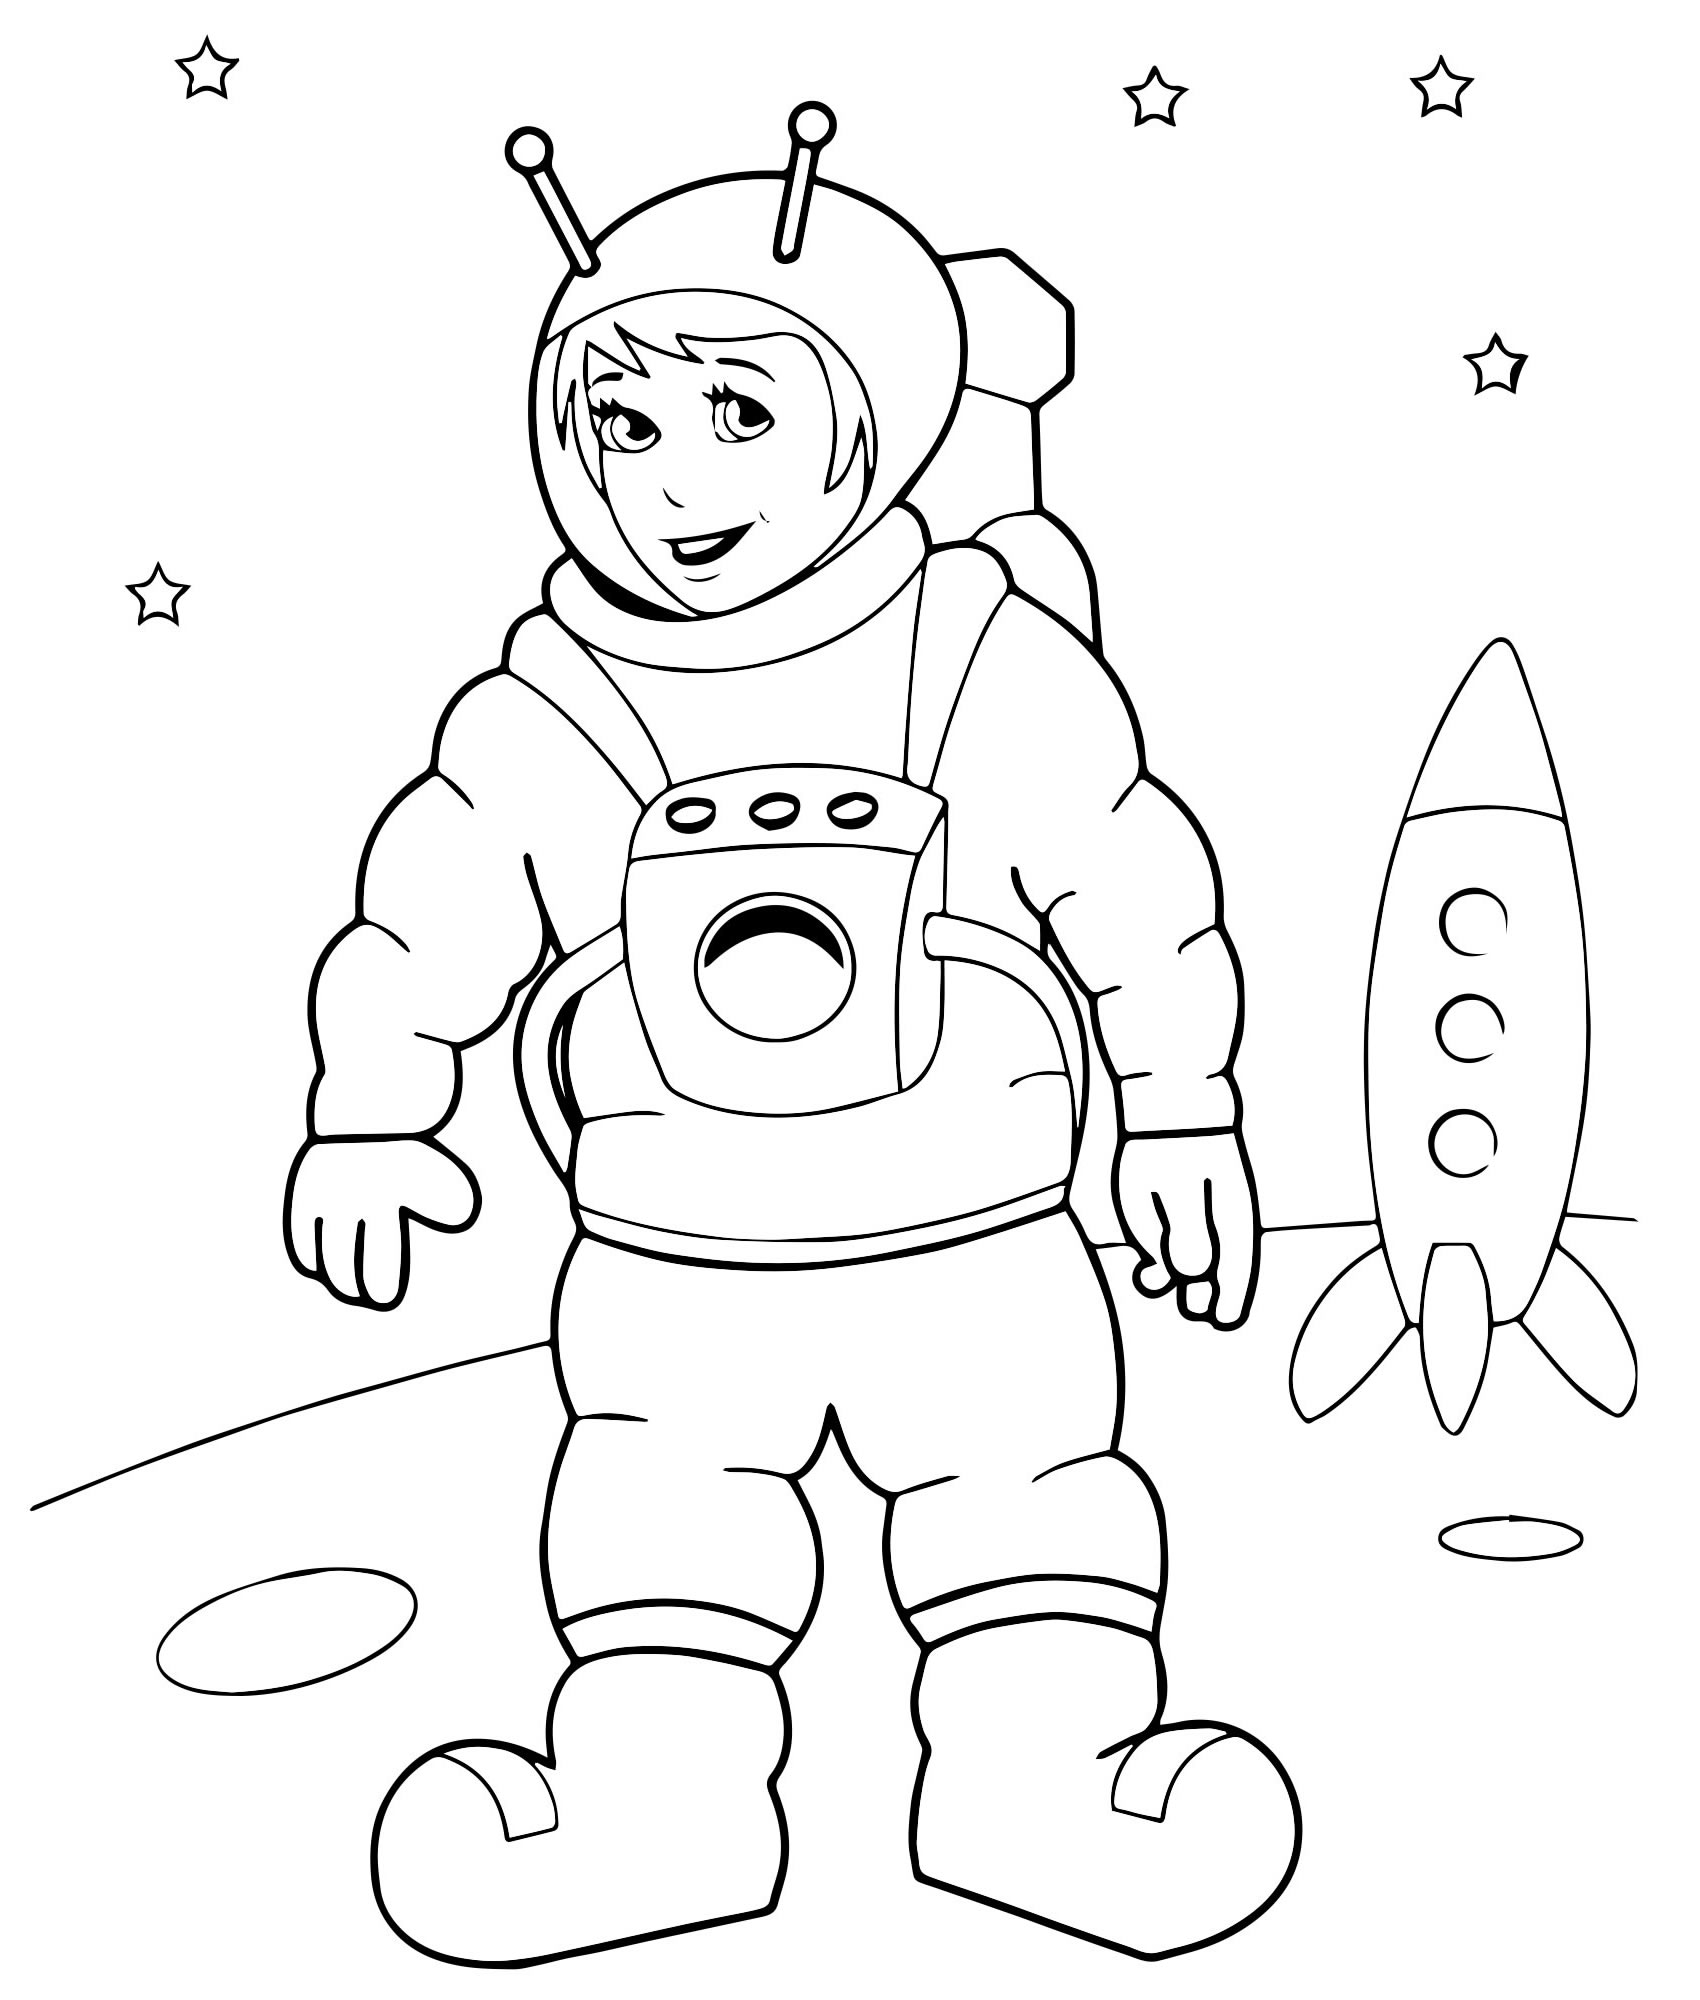 Трафареты ко дню космонавтики. Космонавт раскраска для детей. Космос раскраска для детей. Космонавтика раскраски для детей. Раскраска. В космосе.